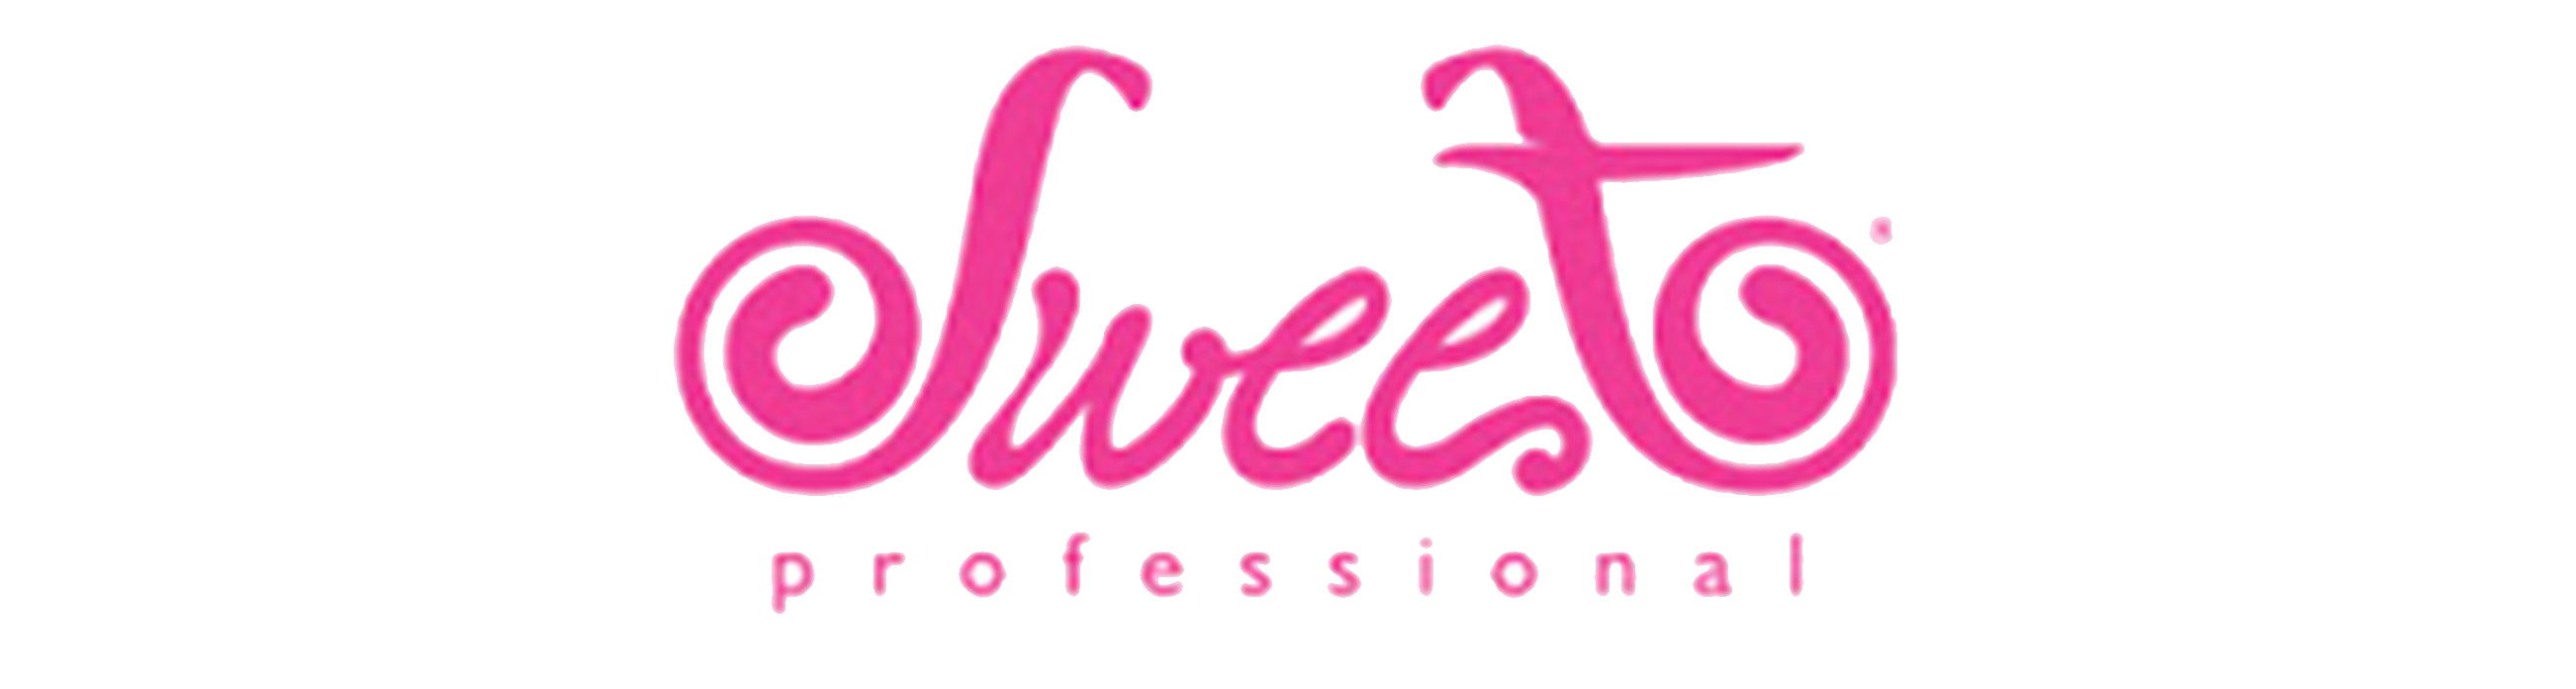 Logo Product